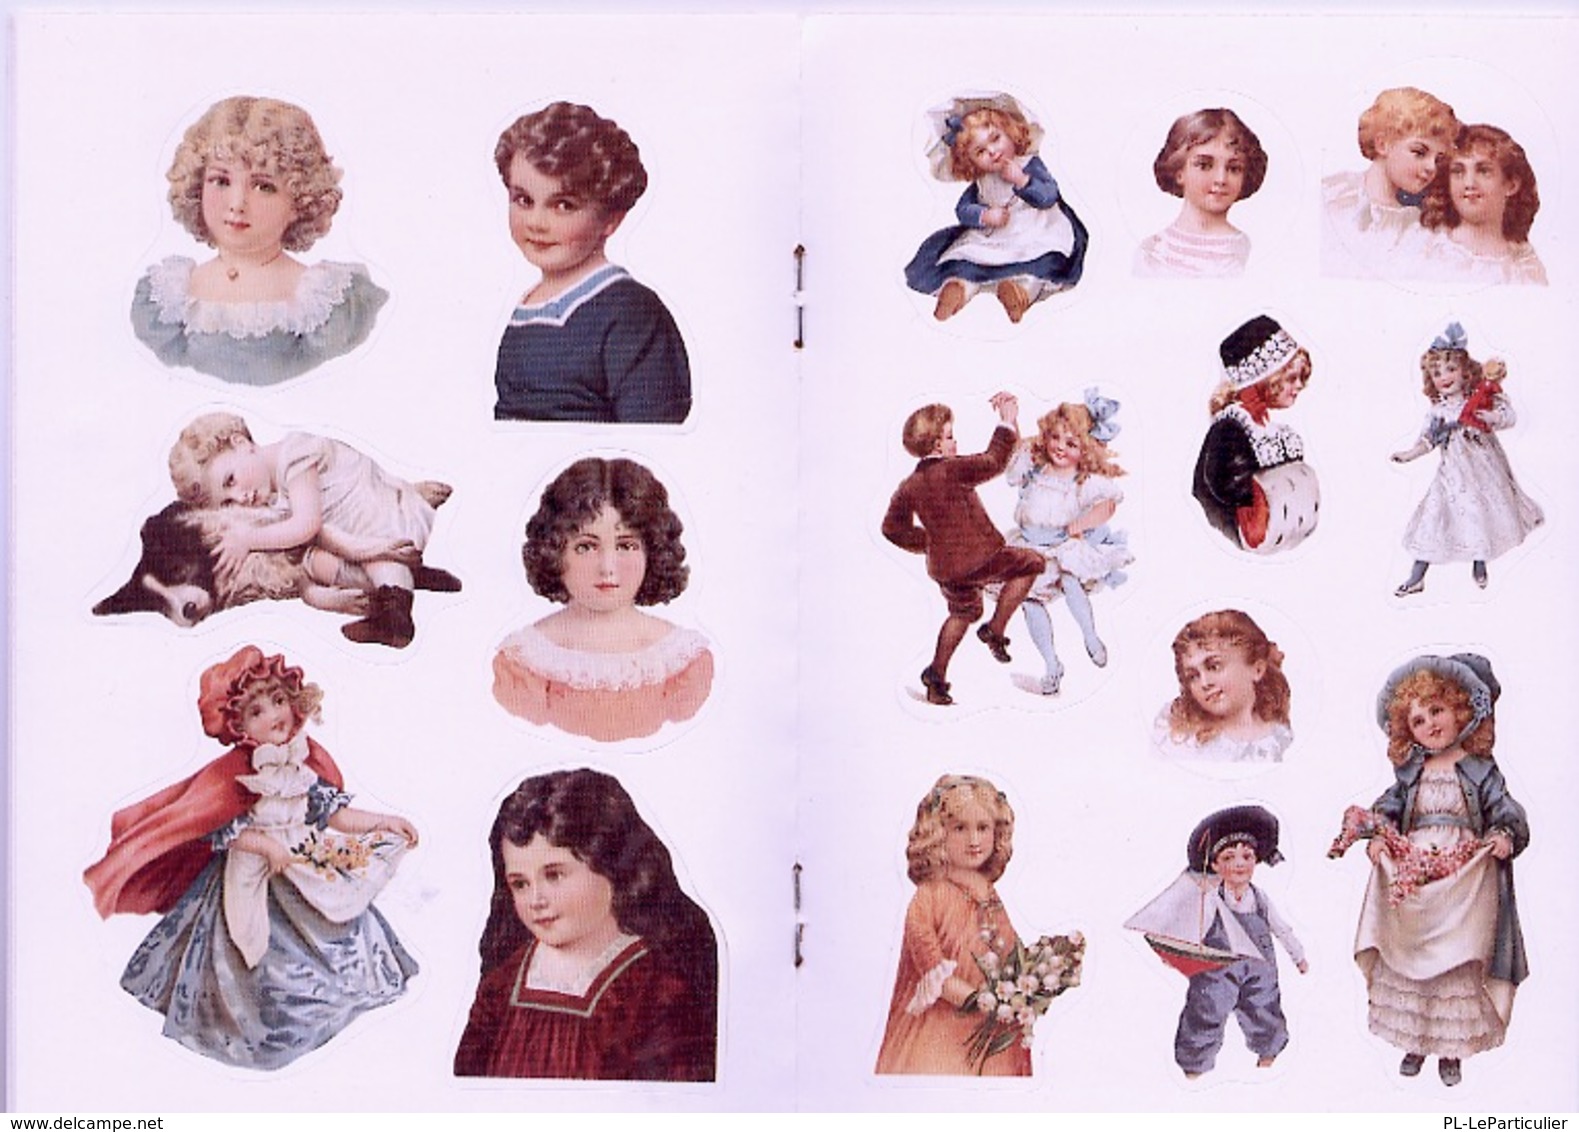 Old Time Children Stickers By Carol Belanger Grafton Dover USA (autocollants) - Tätigkeiten/Malbücher